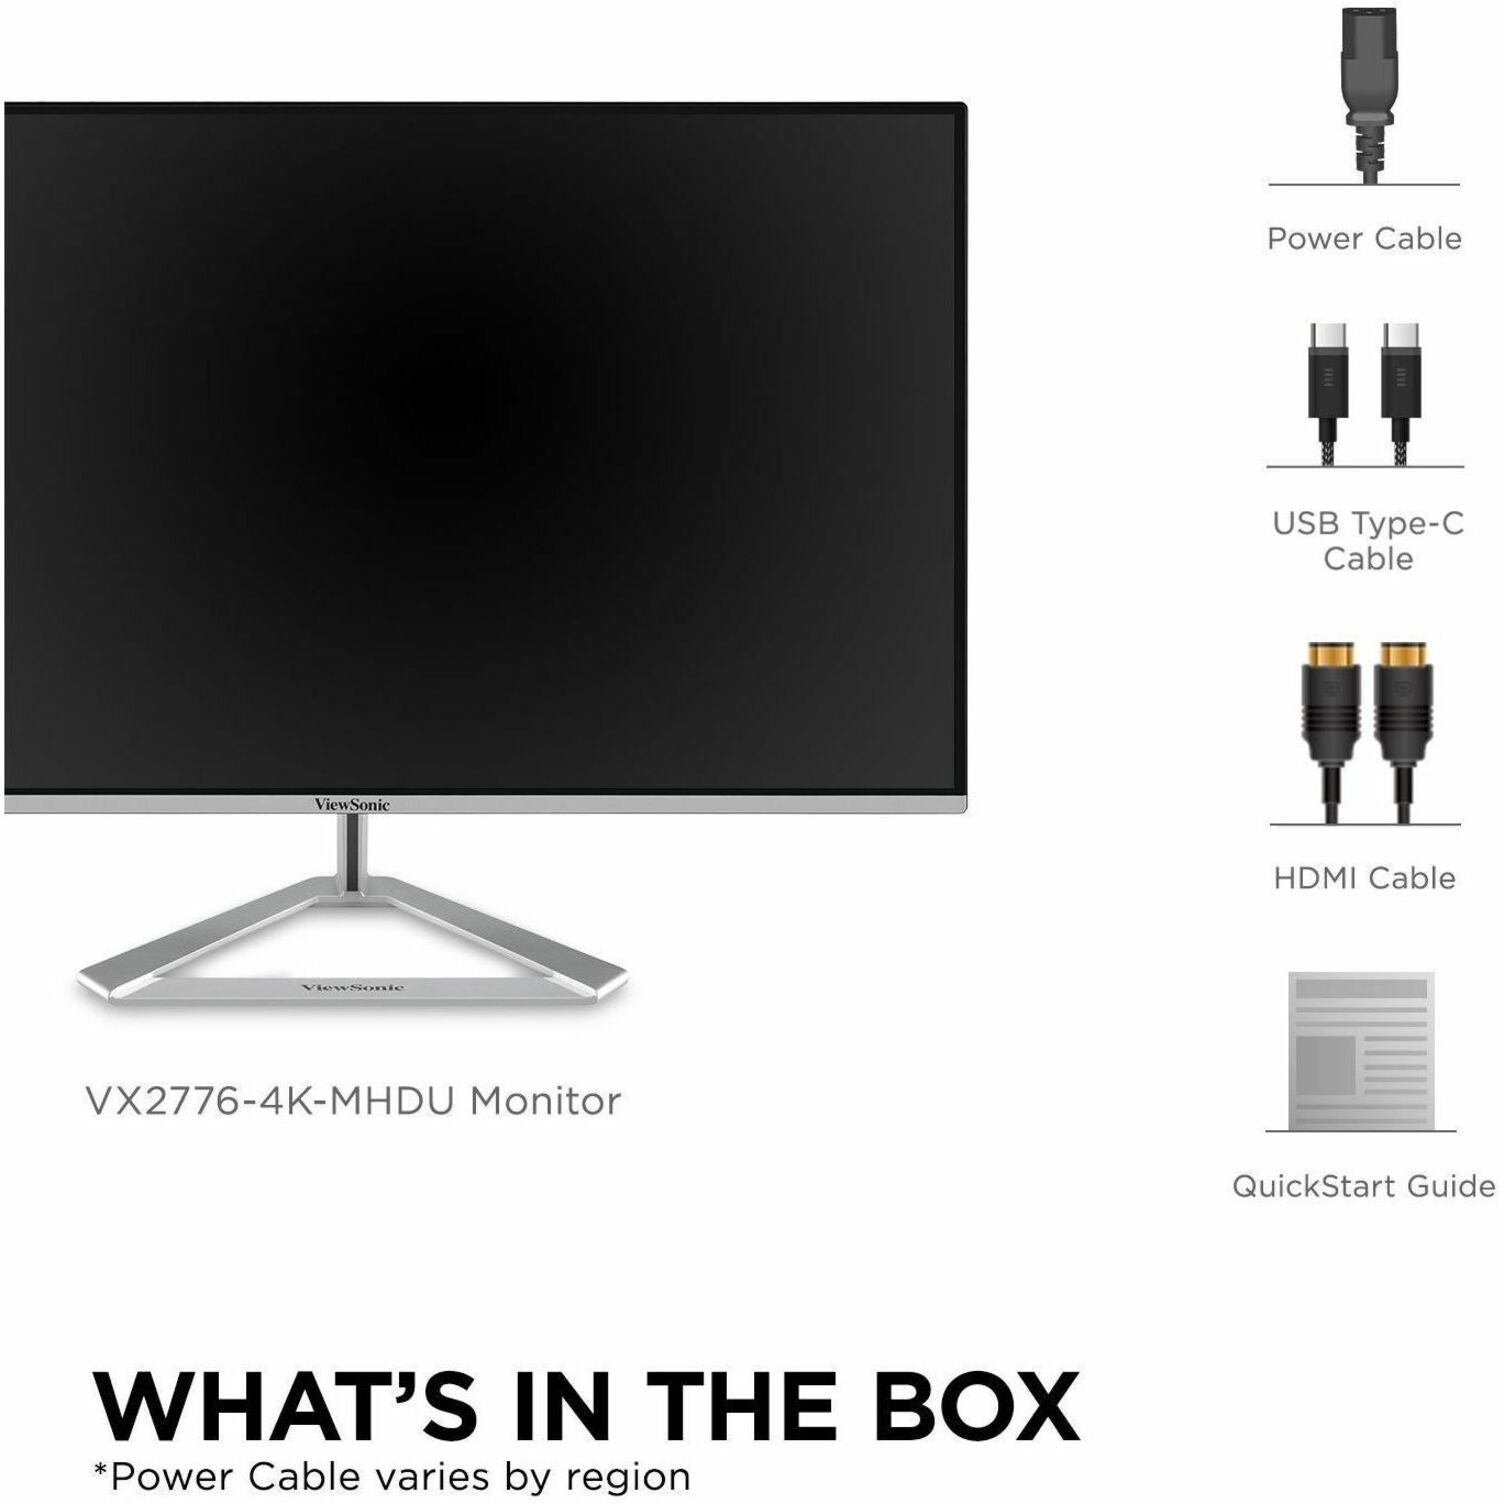 ViewSonic VX2776-4K-MHDU 27" 4K UHD Monitor IPS de Bisel Delgado con USB-C HDMI y DisplayPort Tiempo de Respuesta de 1ms Brillo de 350 Nits 1.07 Mil Millones de Colores. Marca: ViewSonic.